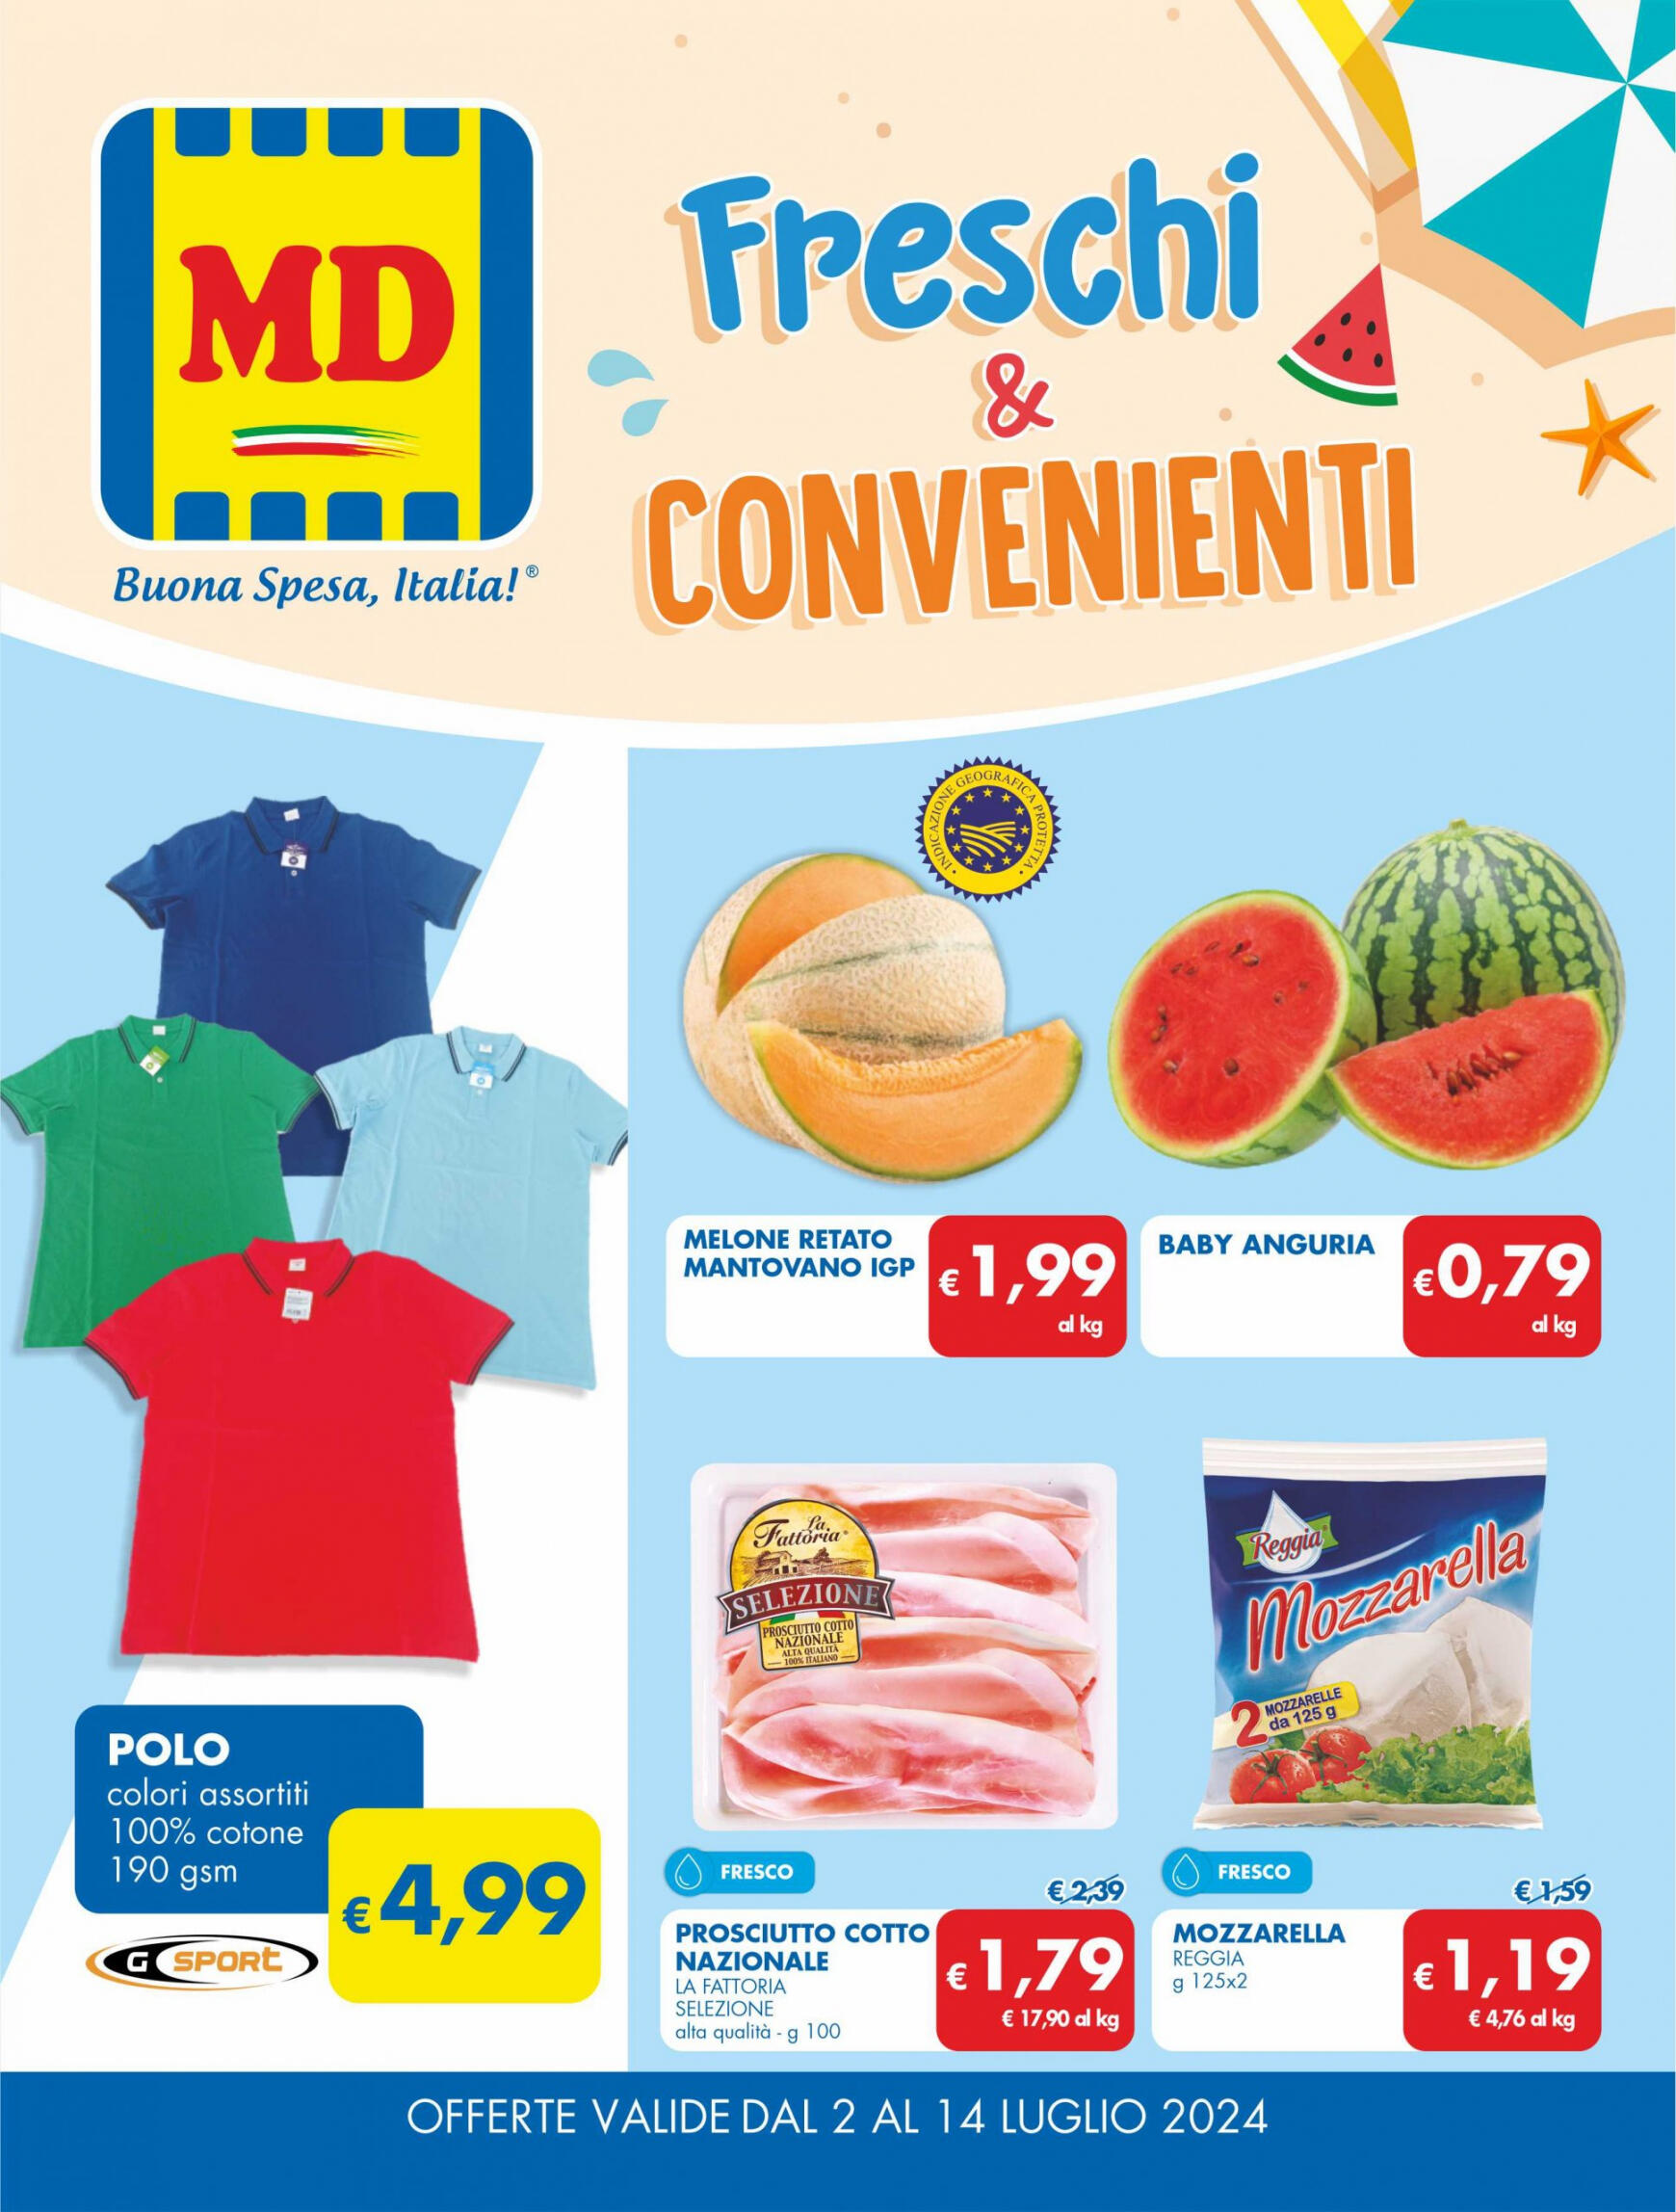 md-discount - Nuovo volantino MD 02.07. - 14.07.